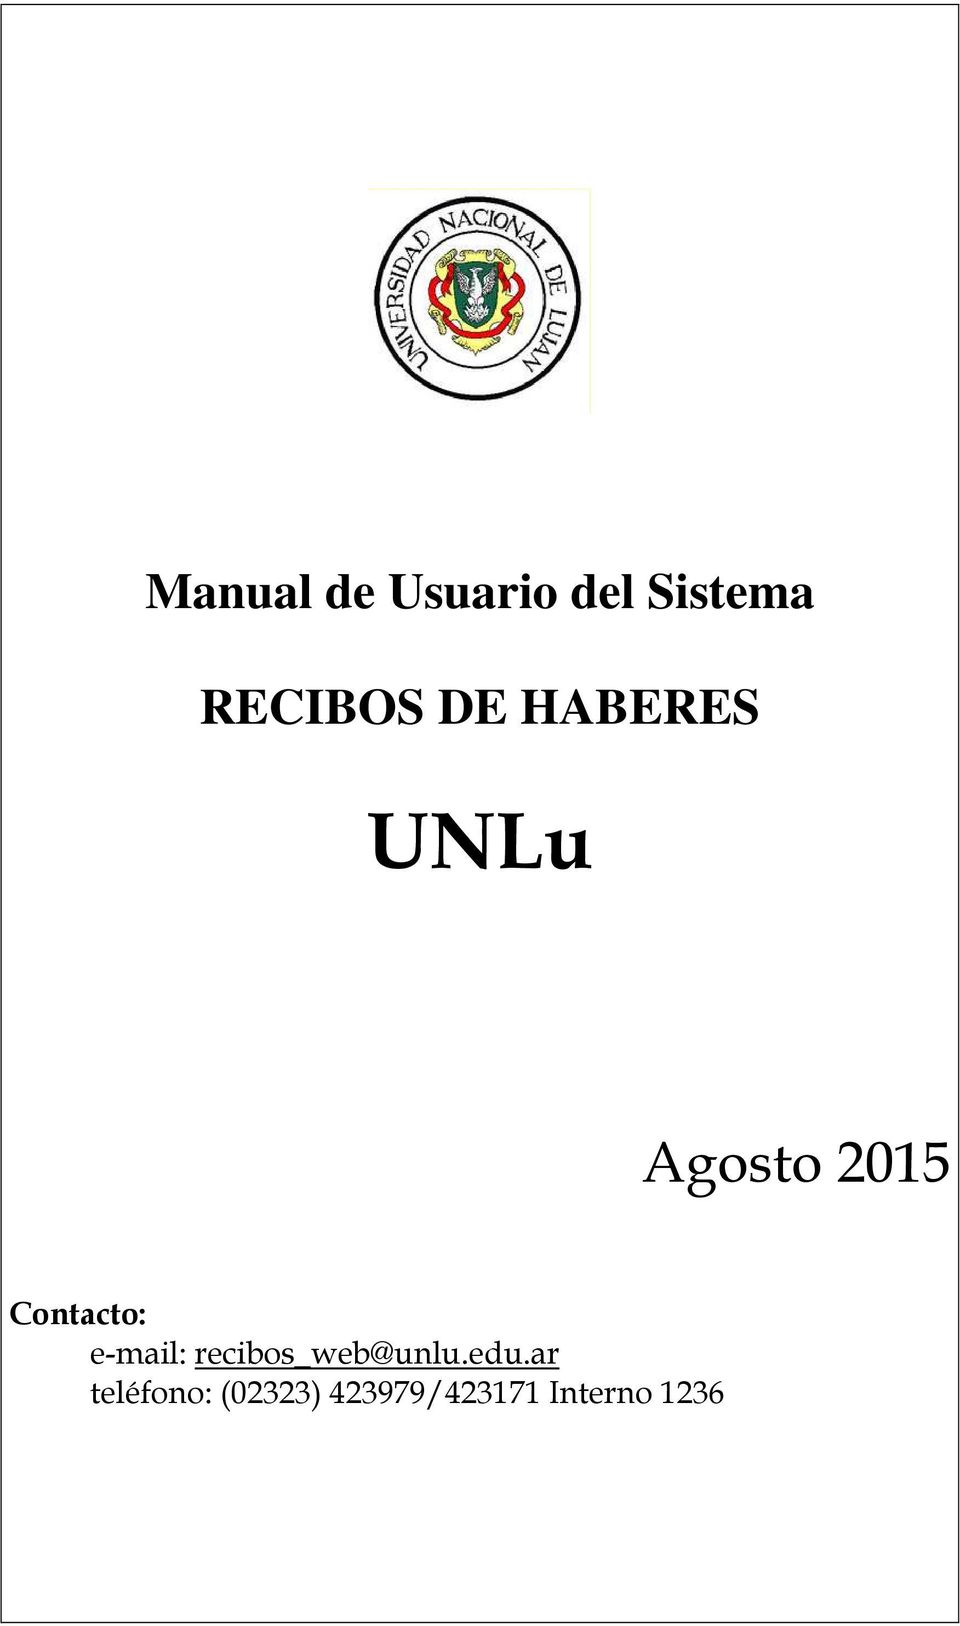 e-mail: recibos_web@unlu.edu.